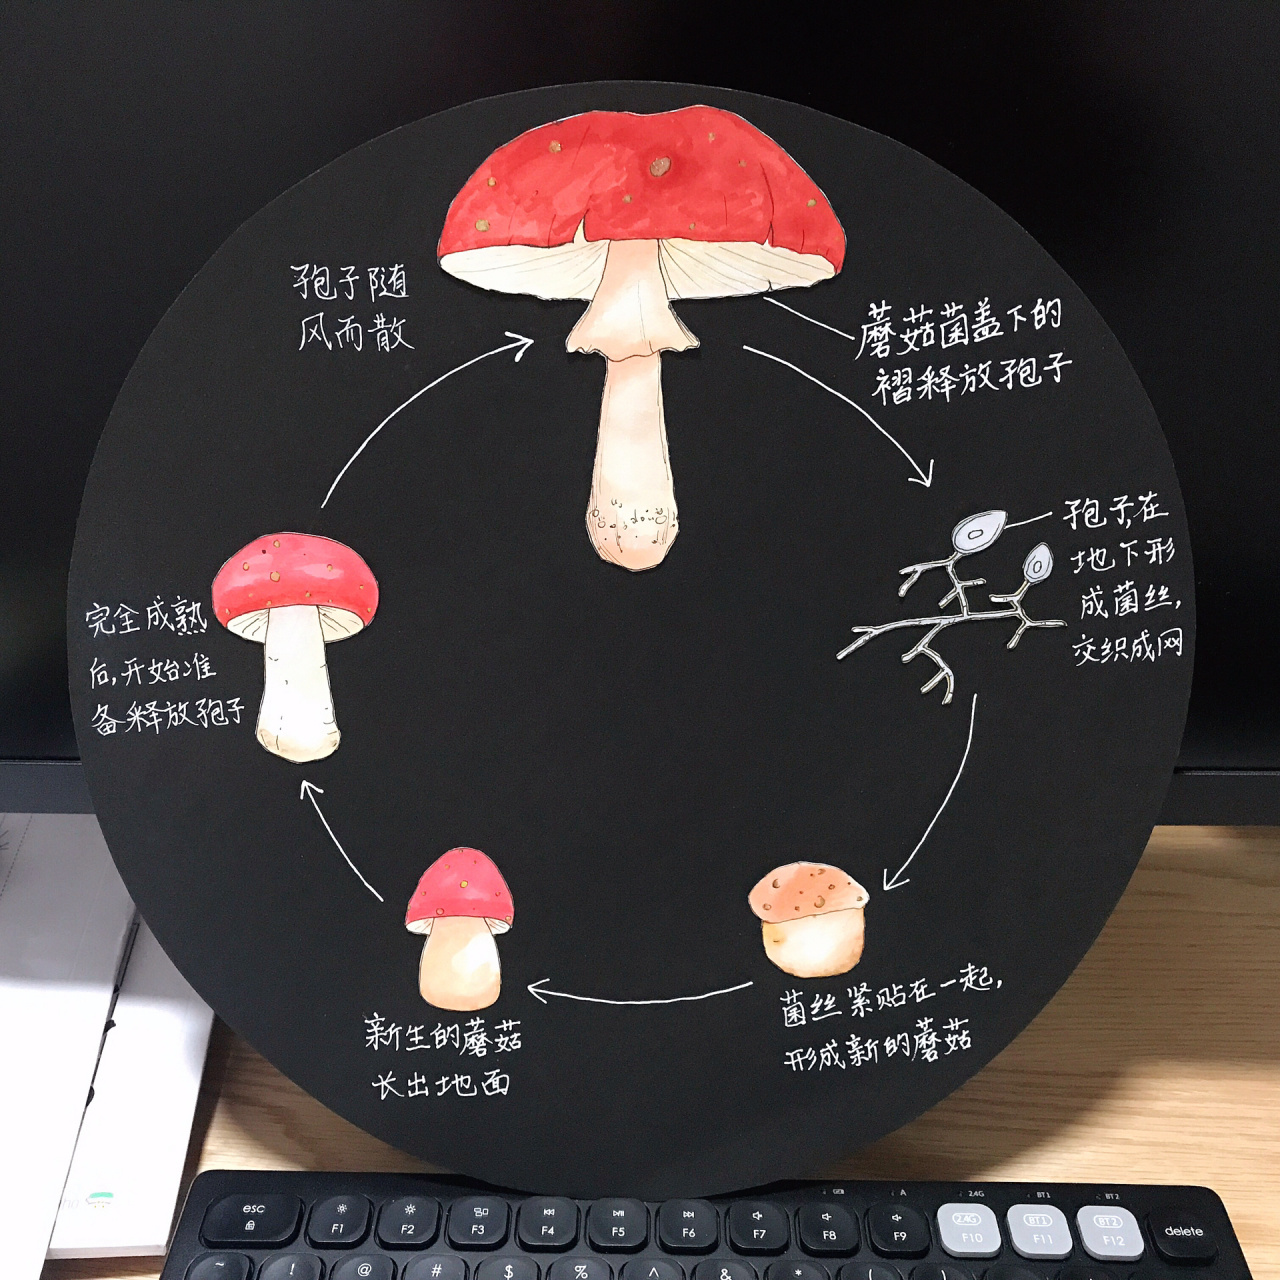 蘑菇生长过程图图解图片